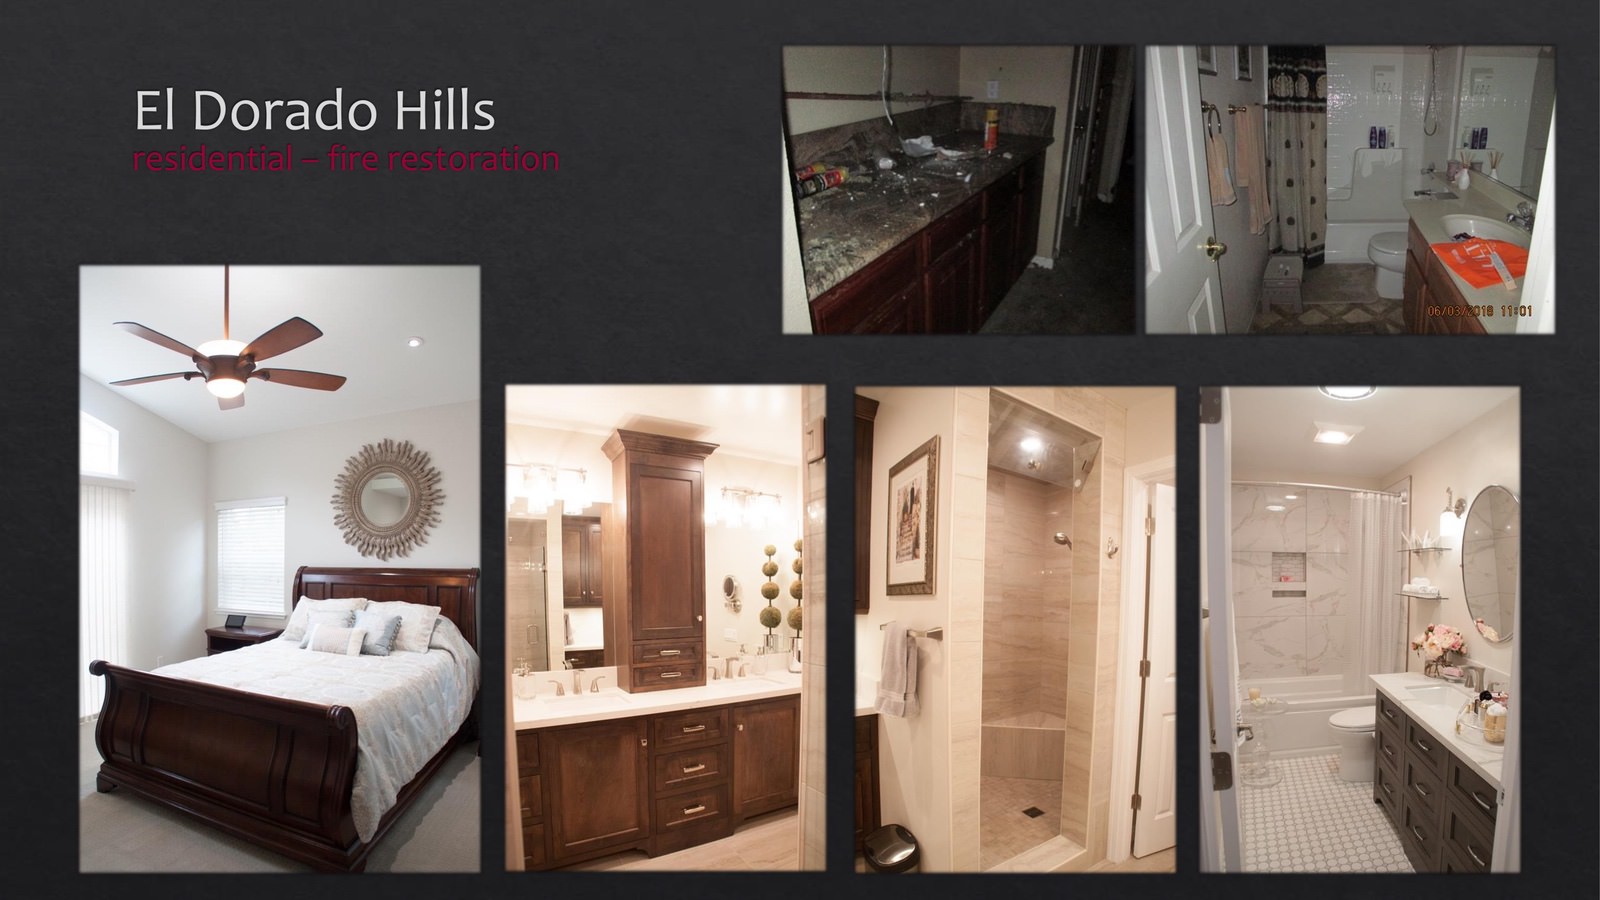 El Dorado Hills Residential fire restoration - bathroom and bedroom - lightbox